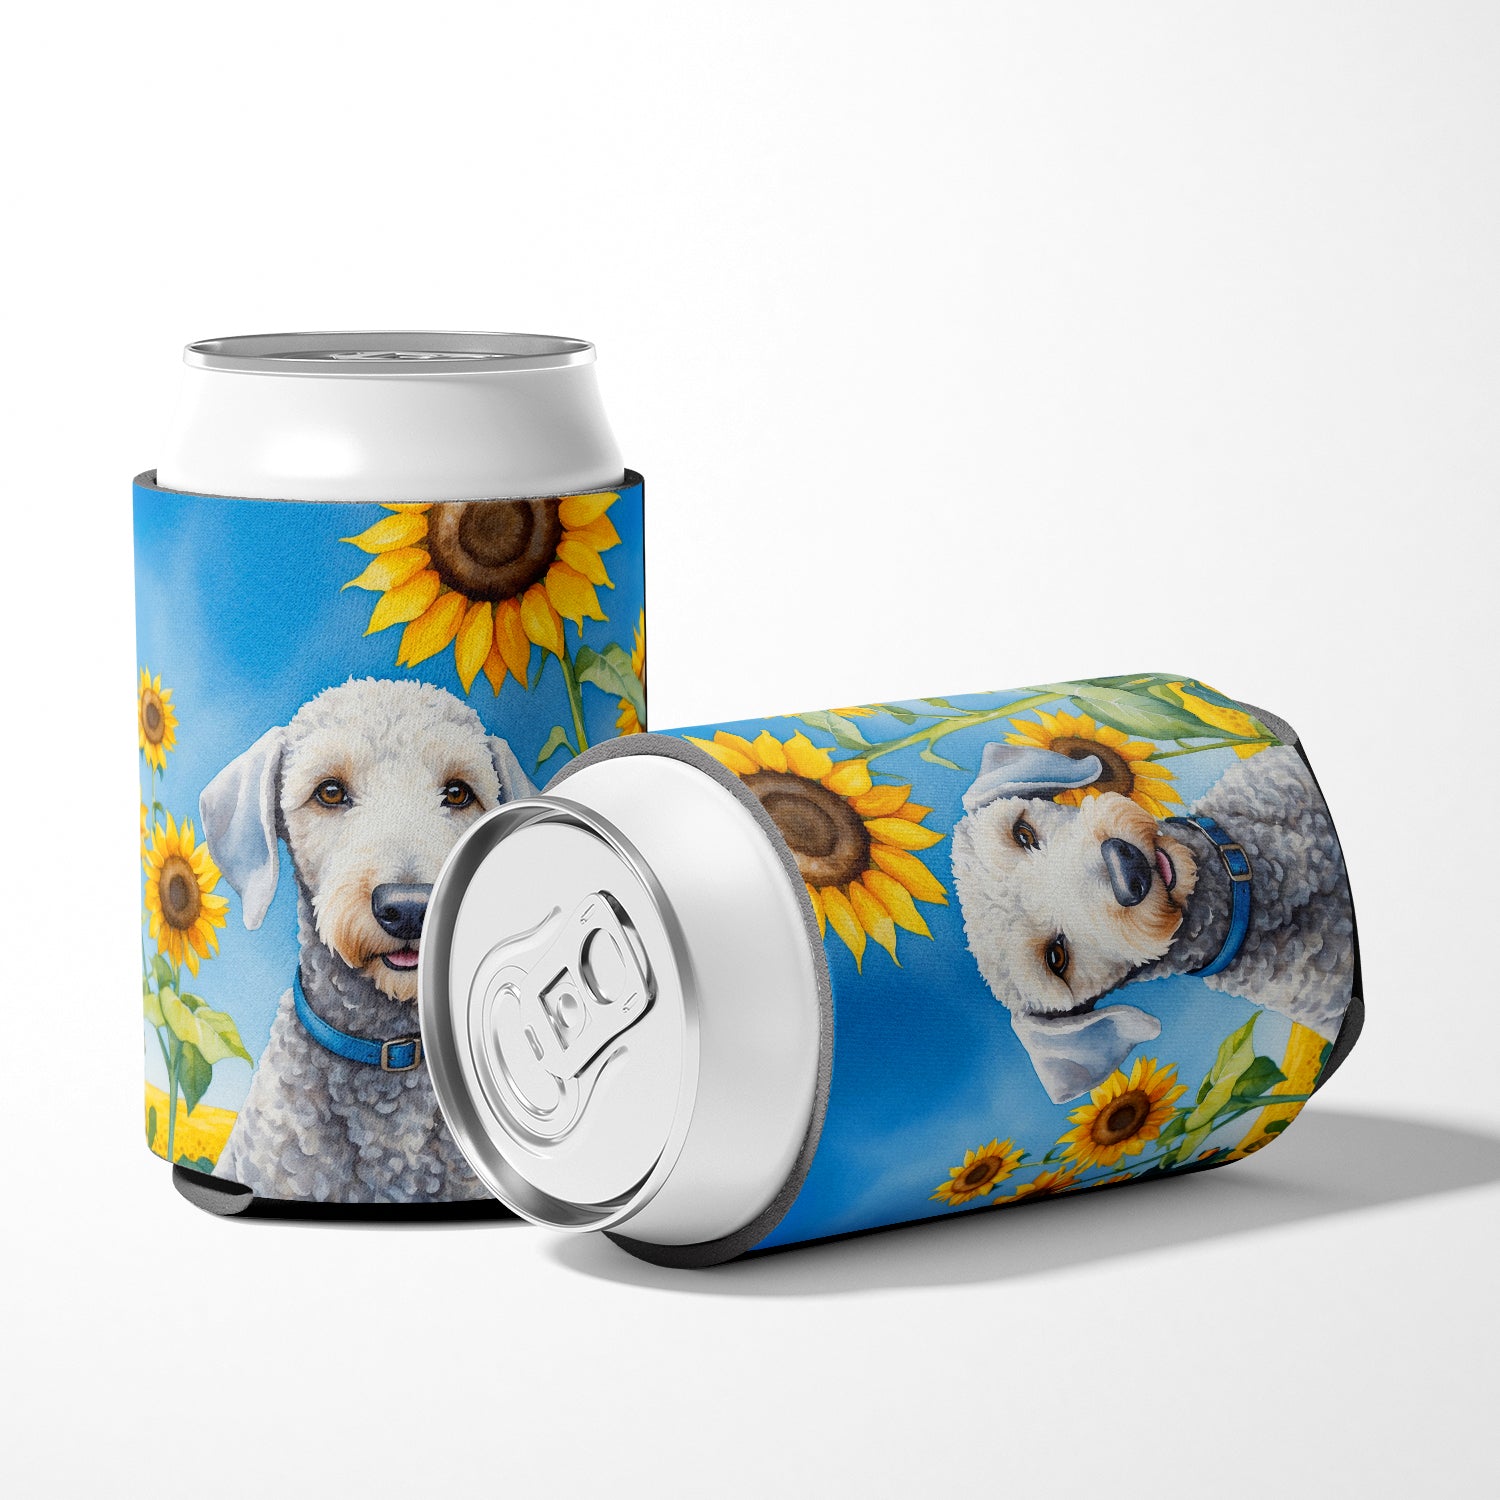 Bedlington Terrier in Sunflowers Can or Bottle Hugger